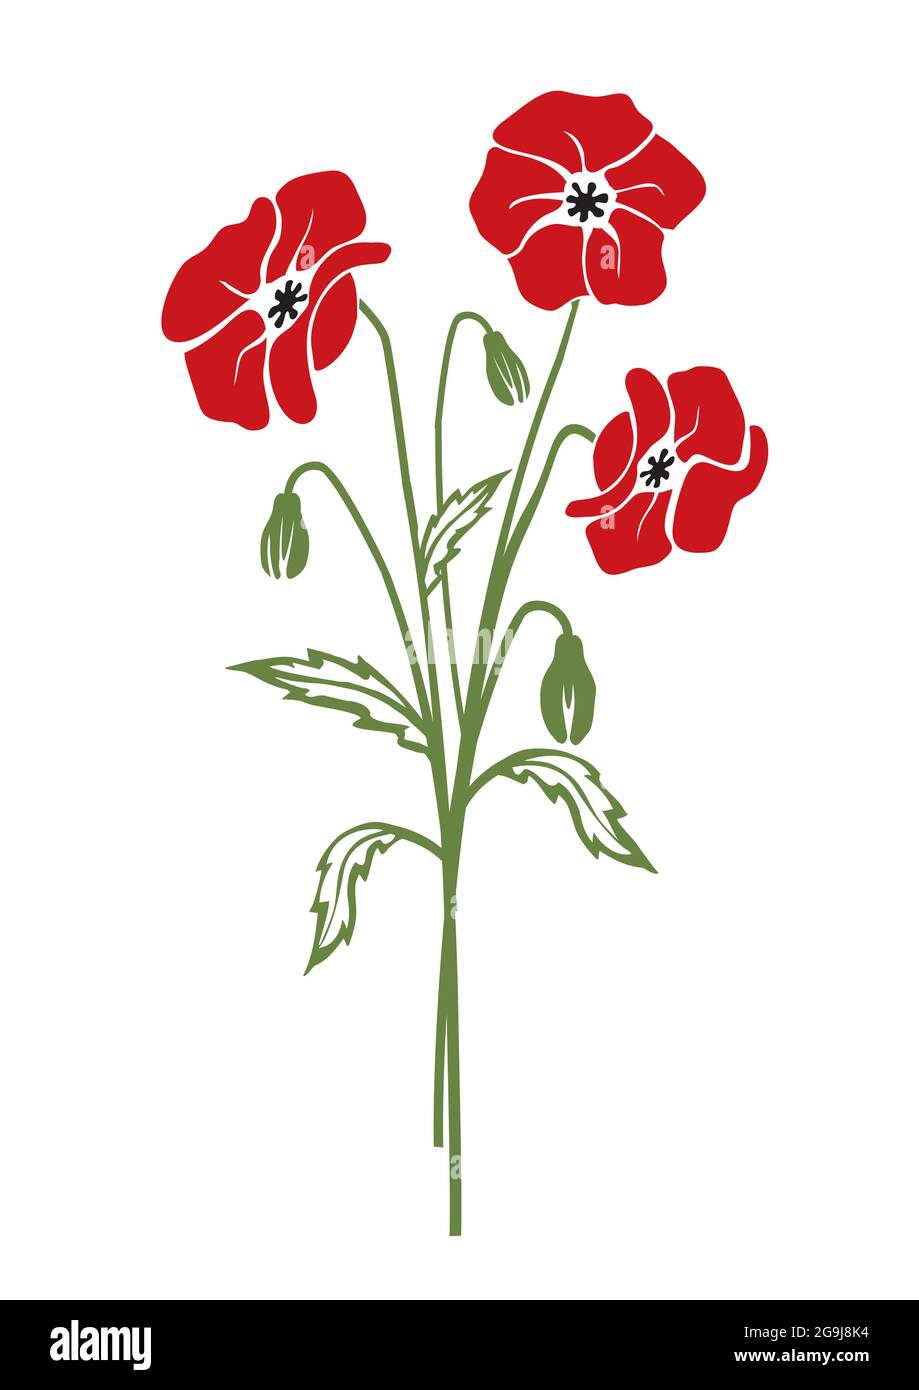 Fleurs de coquelicot rouge, silhouette colorée. Illustration colorée stylisée du motif floral d'été. Isolé sur fond blanc. Vecteur disponible. Illustration de Vecteur